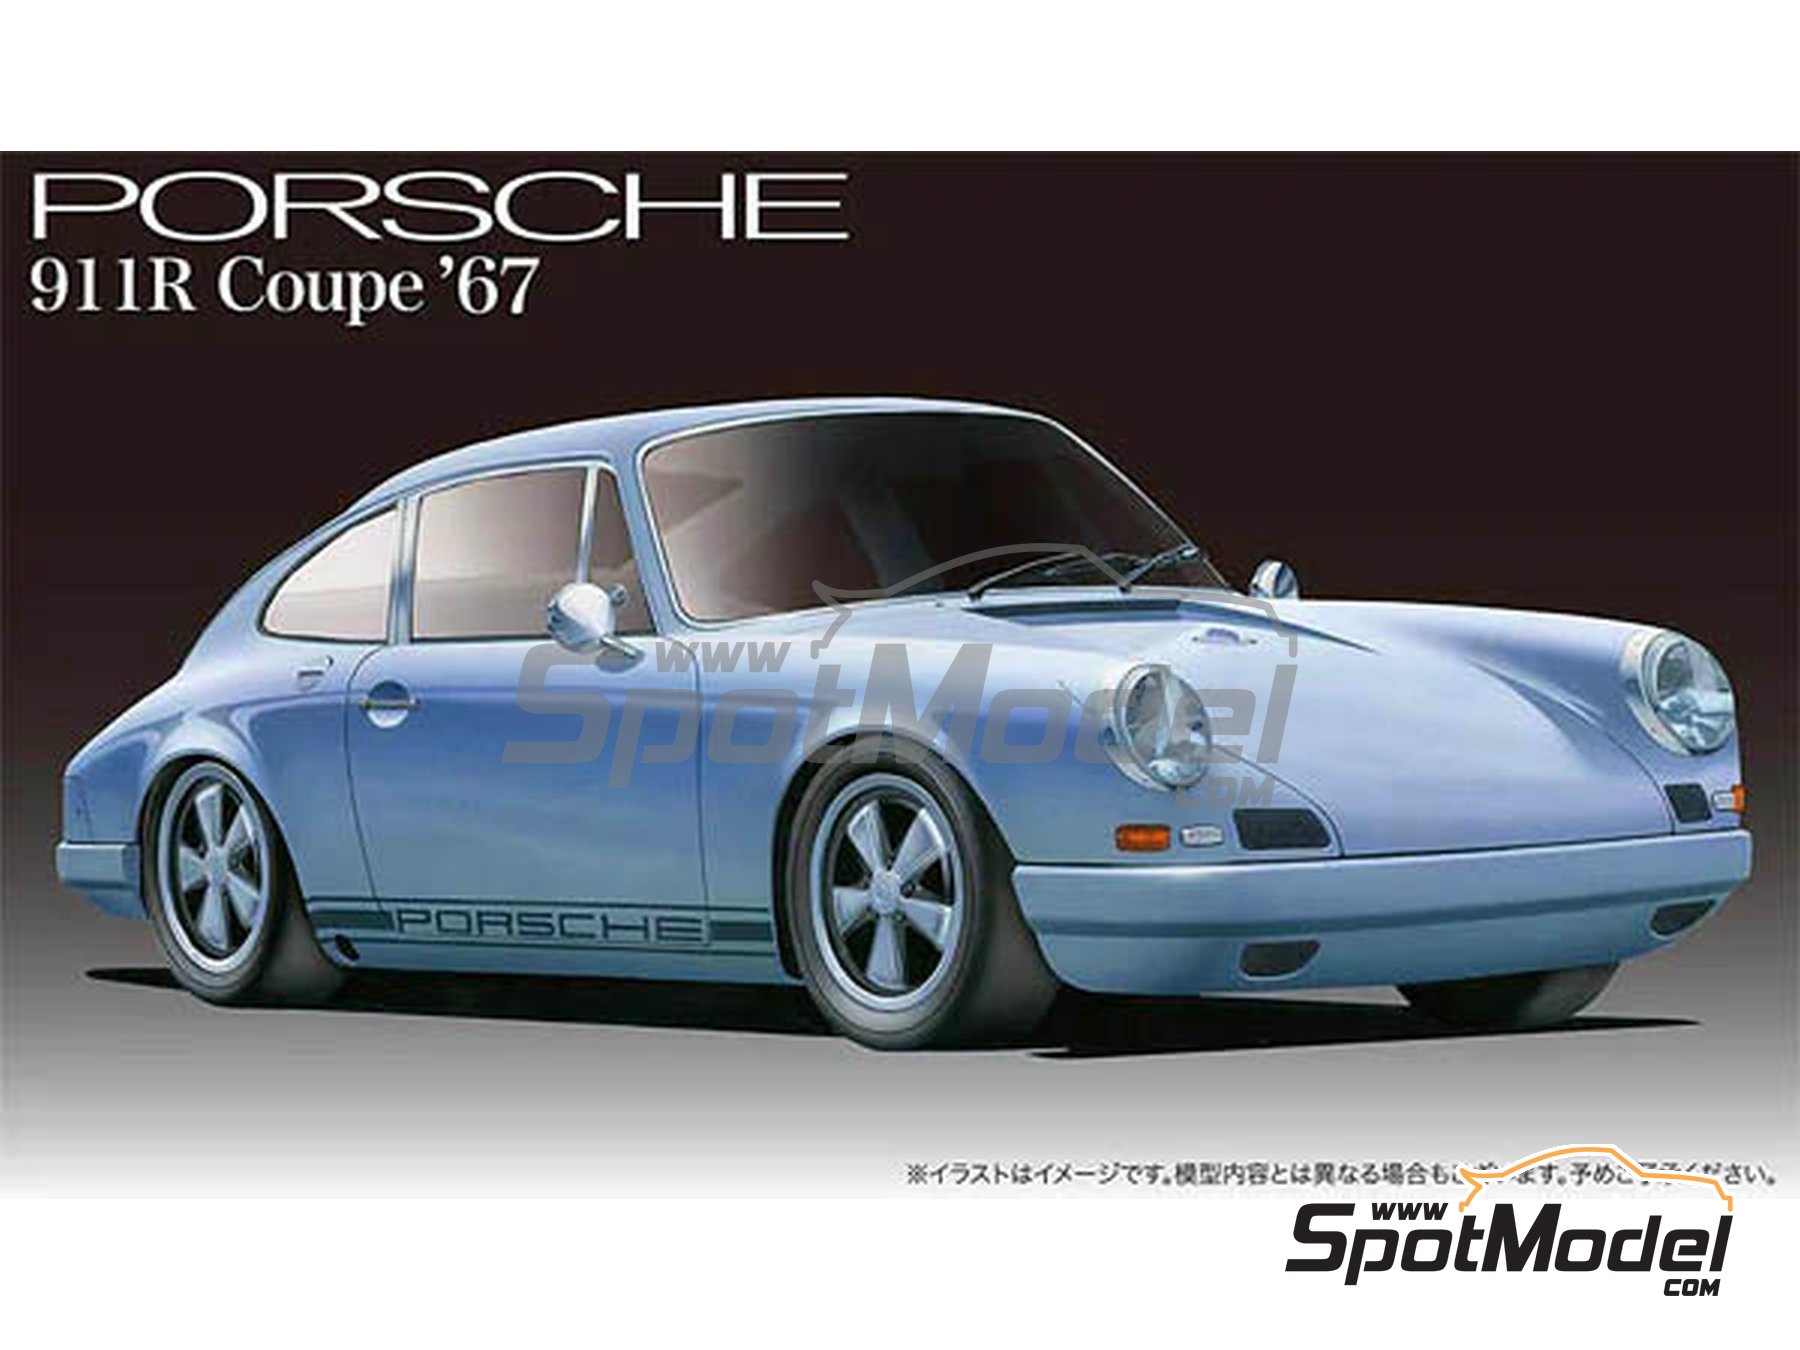 1:24 Scale Fujimi Porsche 911R Coupe'67 Model Kit #